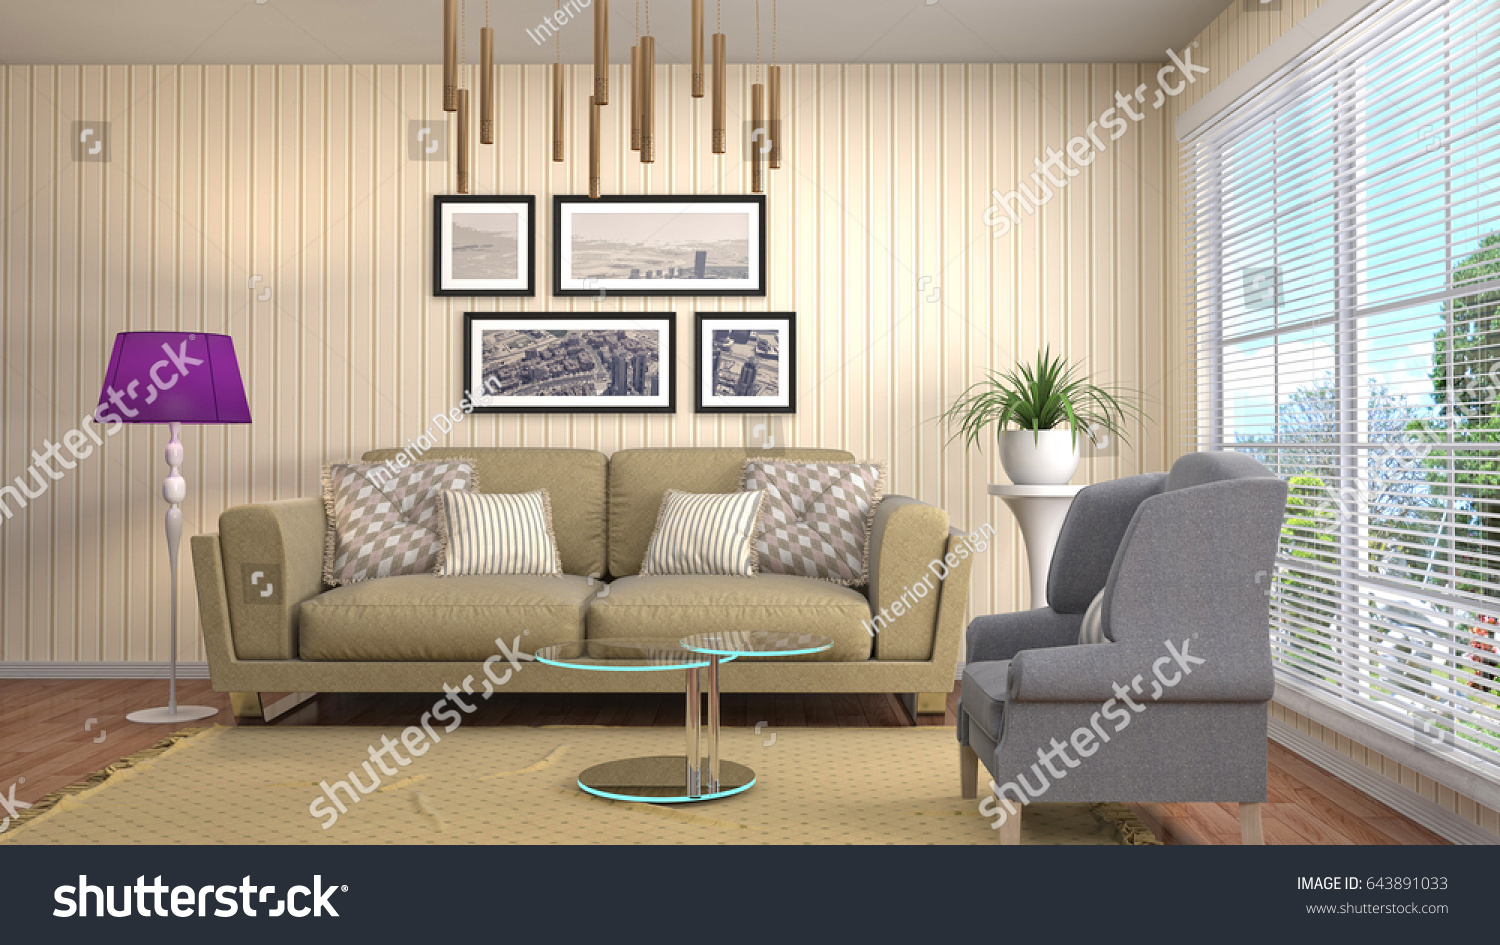 Interior living room. 3d illustration #643891033